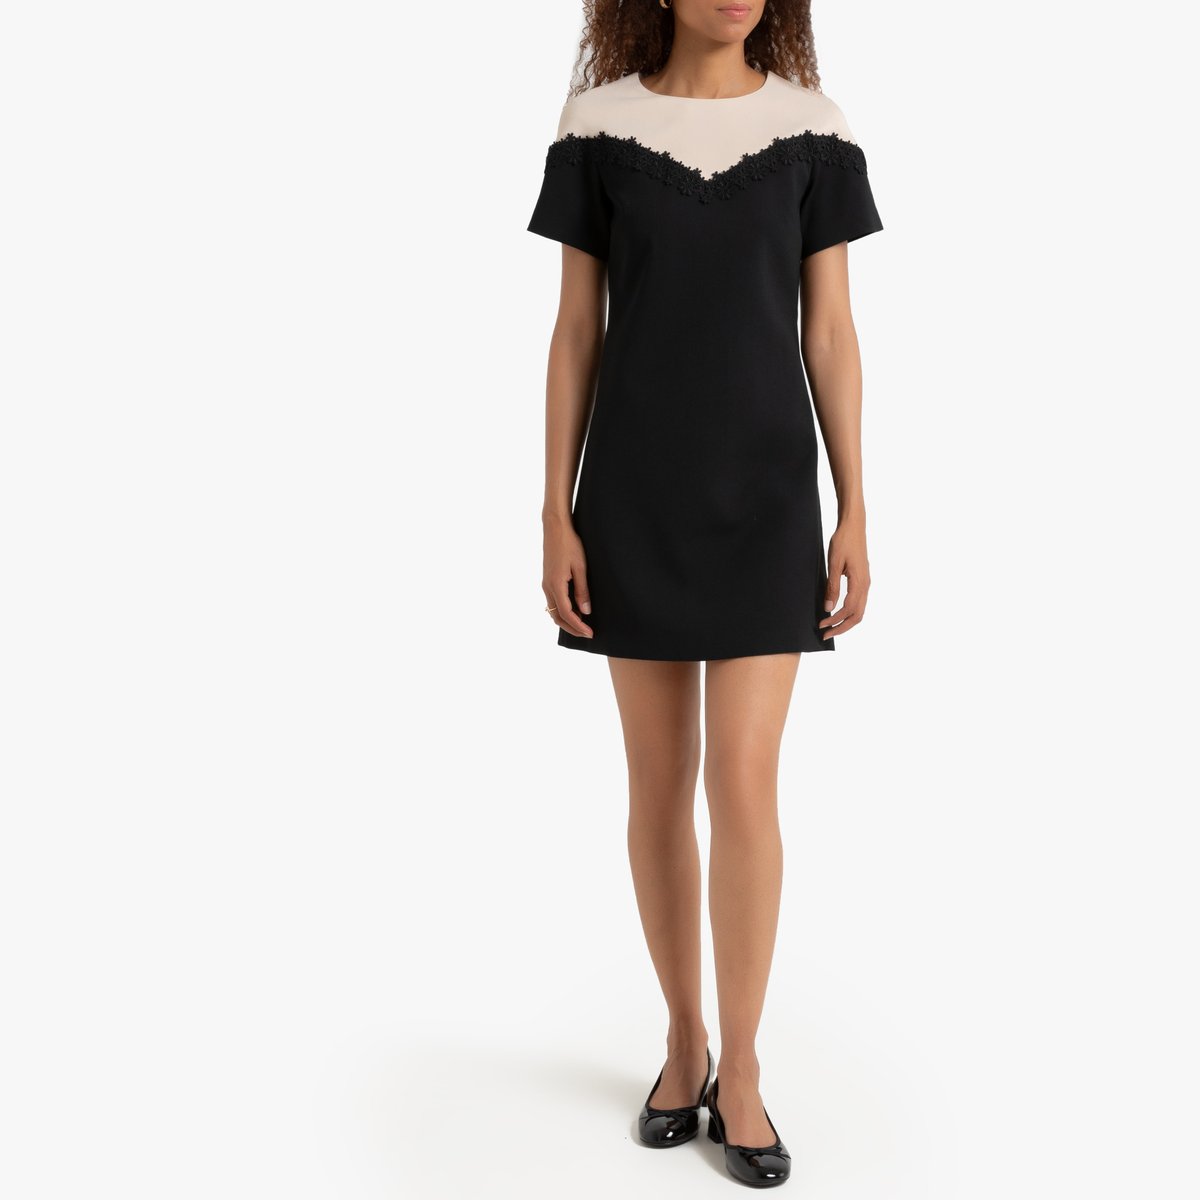 Платье La Redoute Прямое двухцветное с короткими рукавами XS черный, размер XS - фото 2